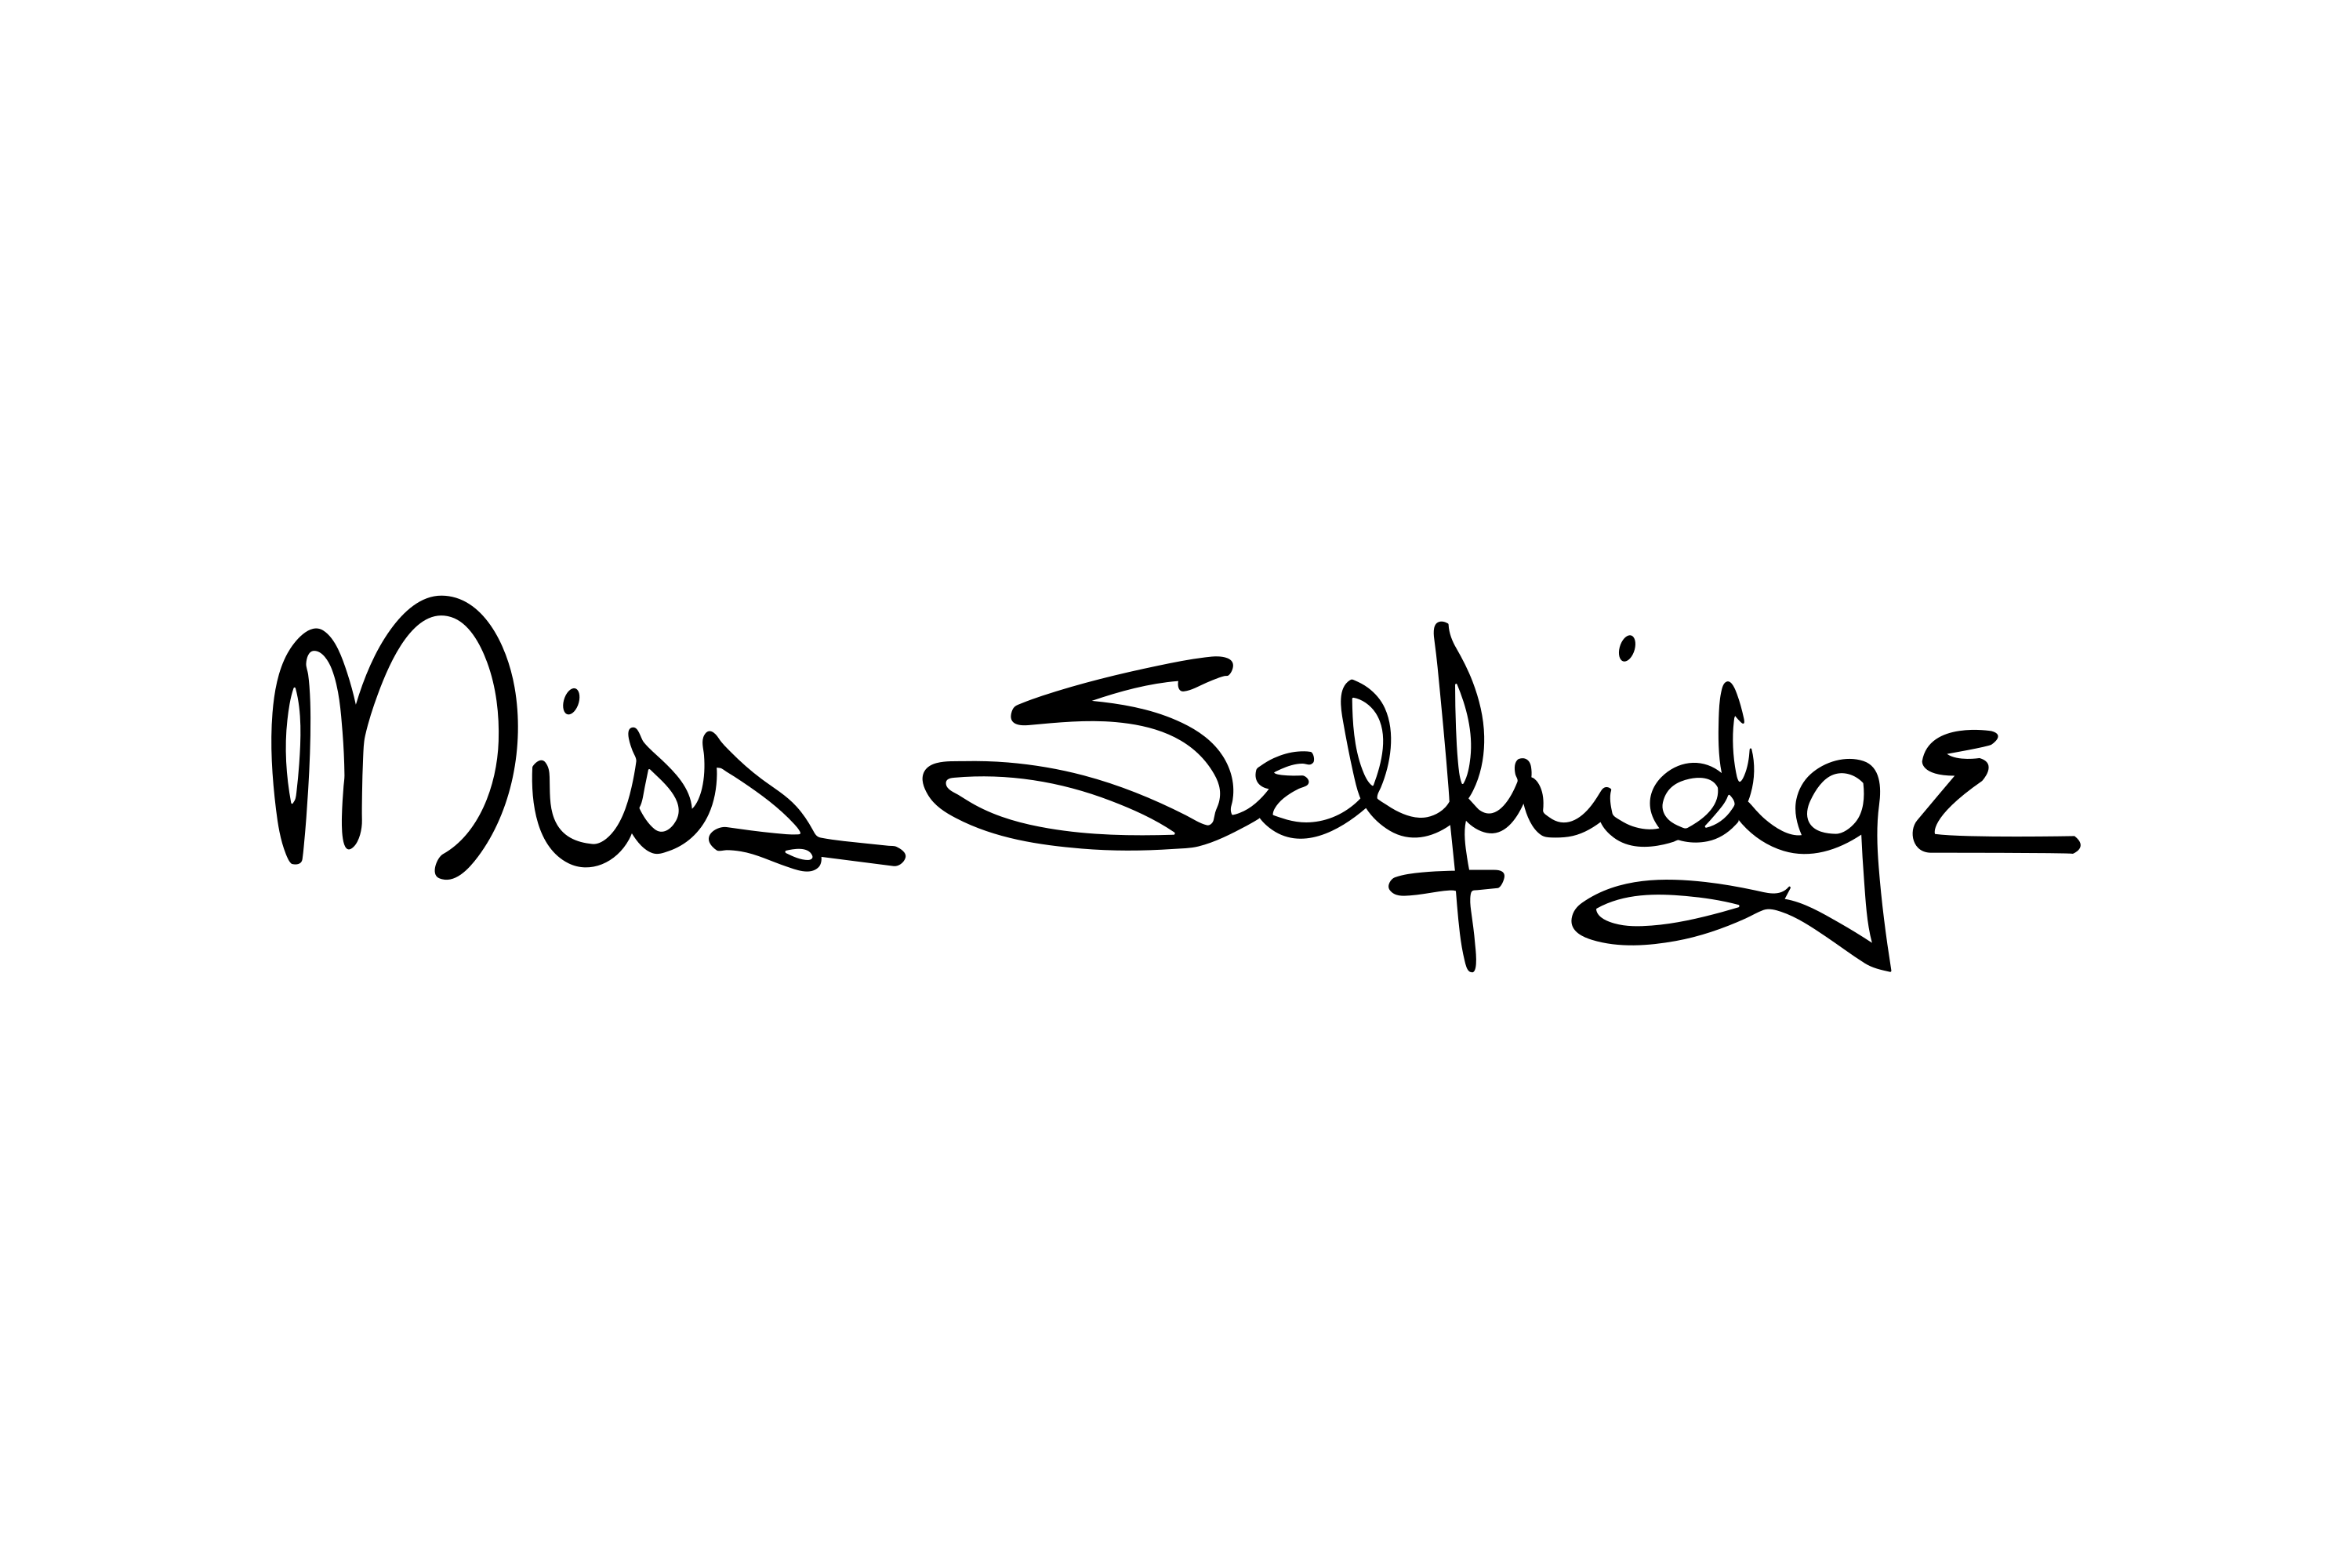 https://download.logo.wine/logo/Miss_Selfridge/Miss_Selfridge-Logo.wine.png